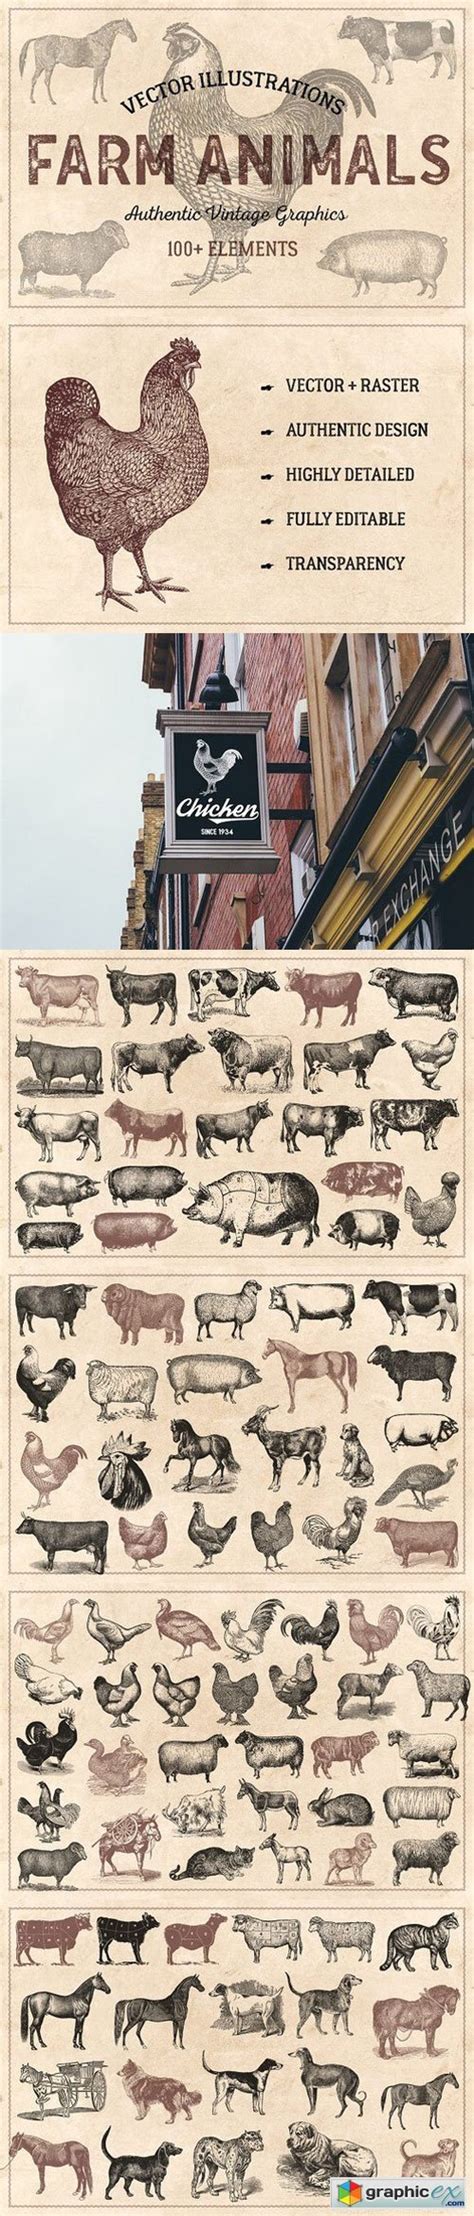 100 Vintage Farm Animals Vector Free Download Vector Stock Image